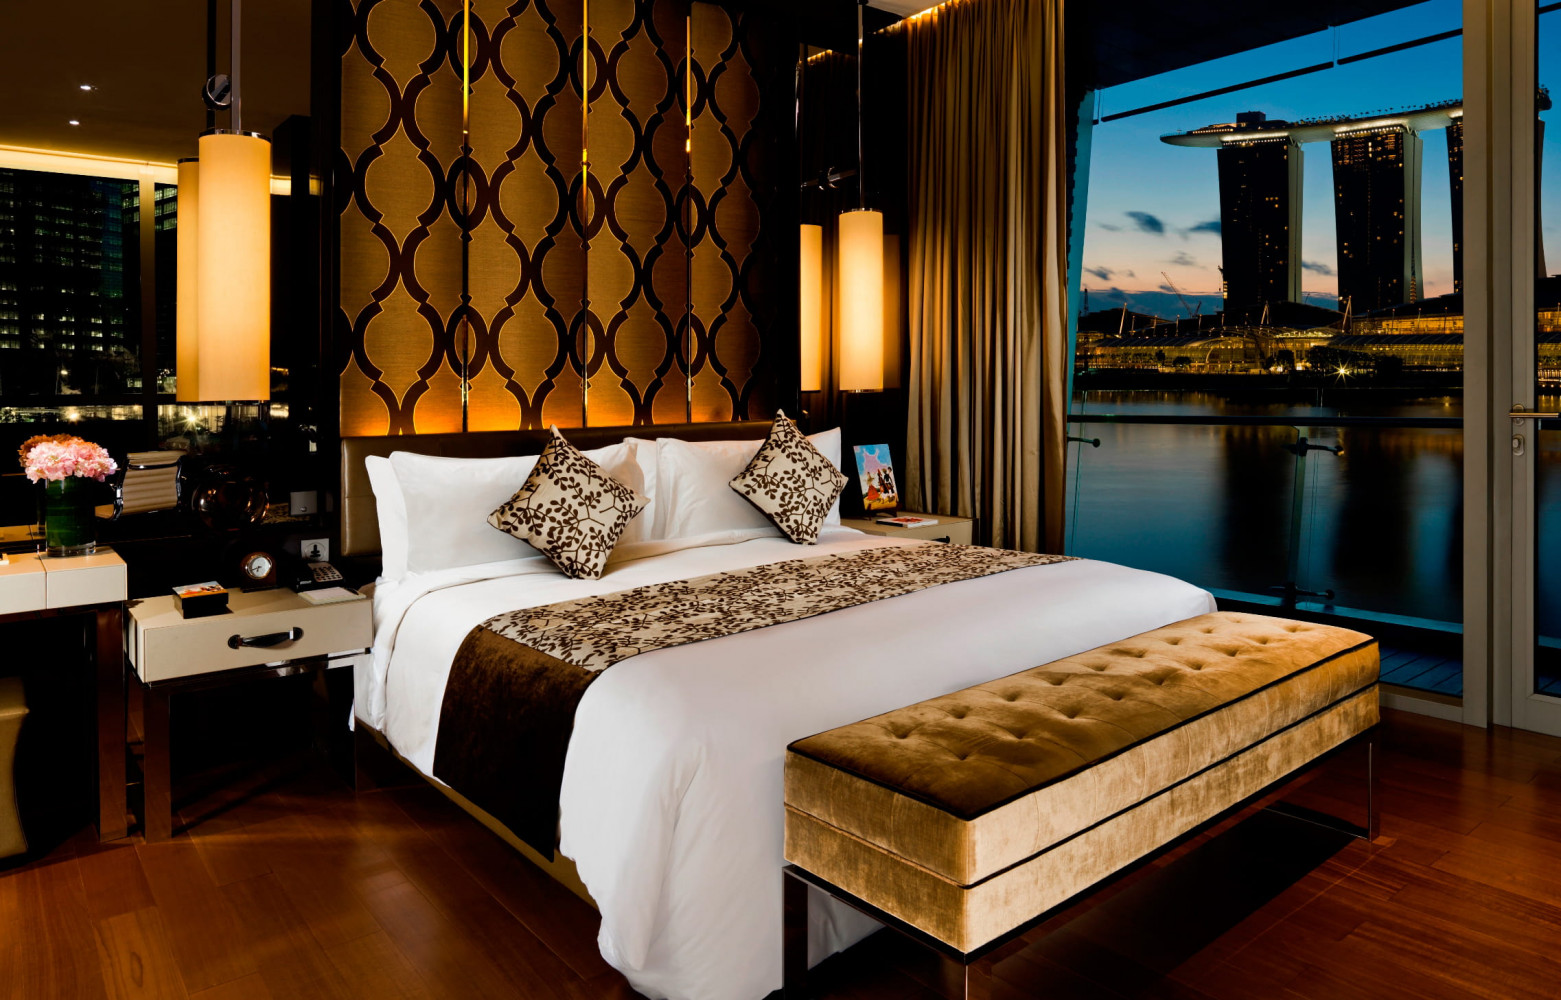 La Shenton Suite dispose d’une vue époustouflante sur le Marina Bay Sands et ses fameuses tours.